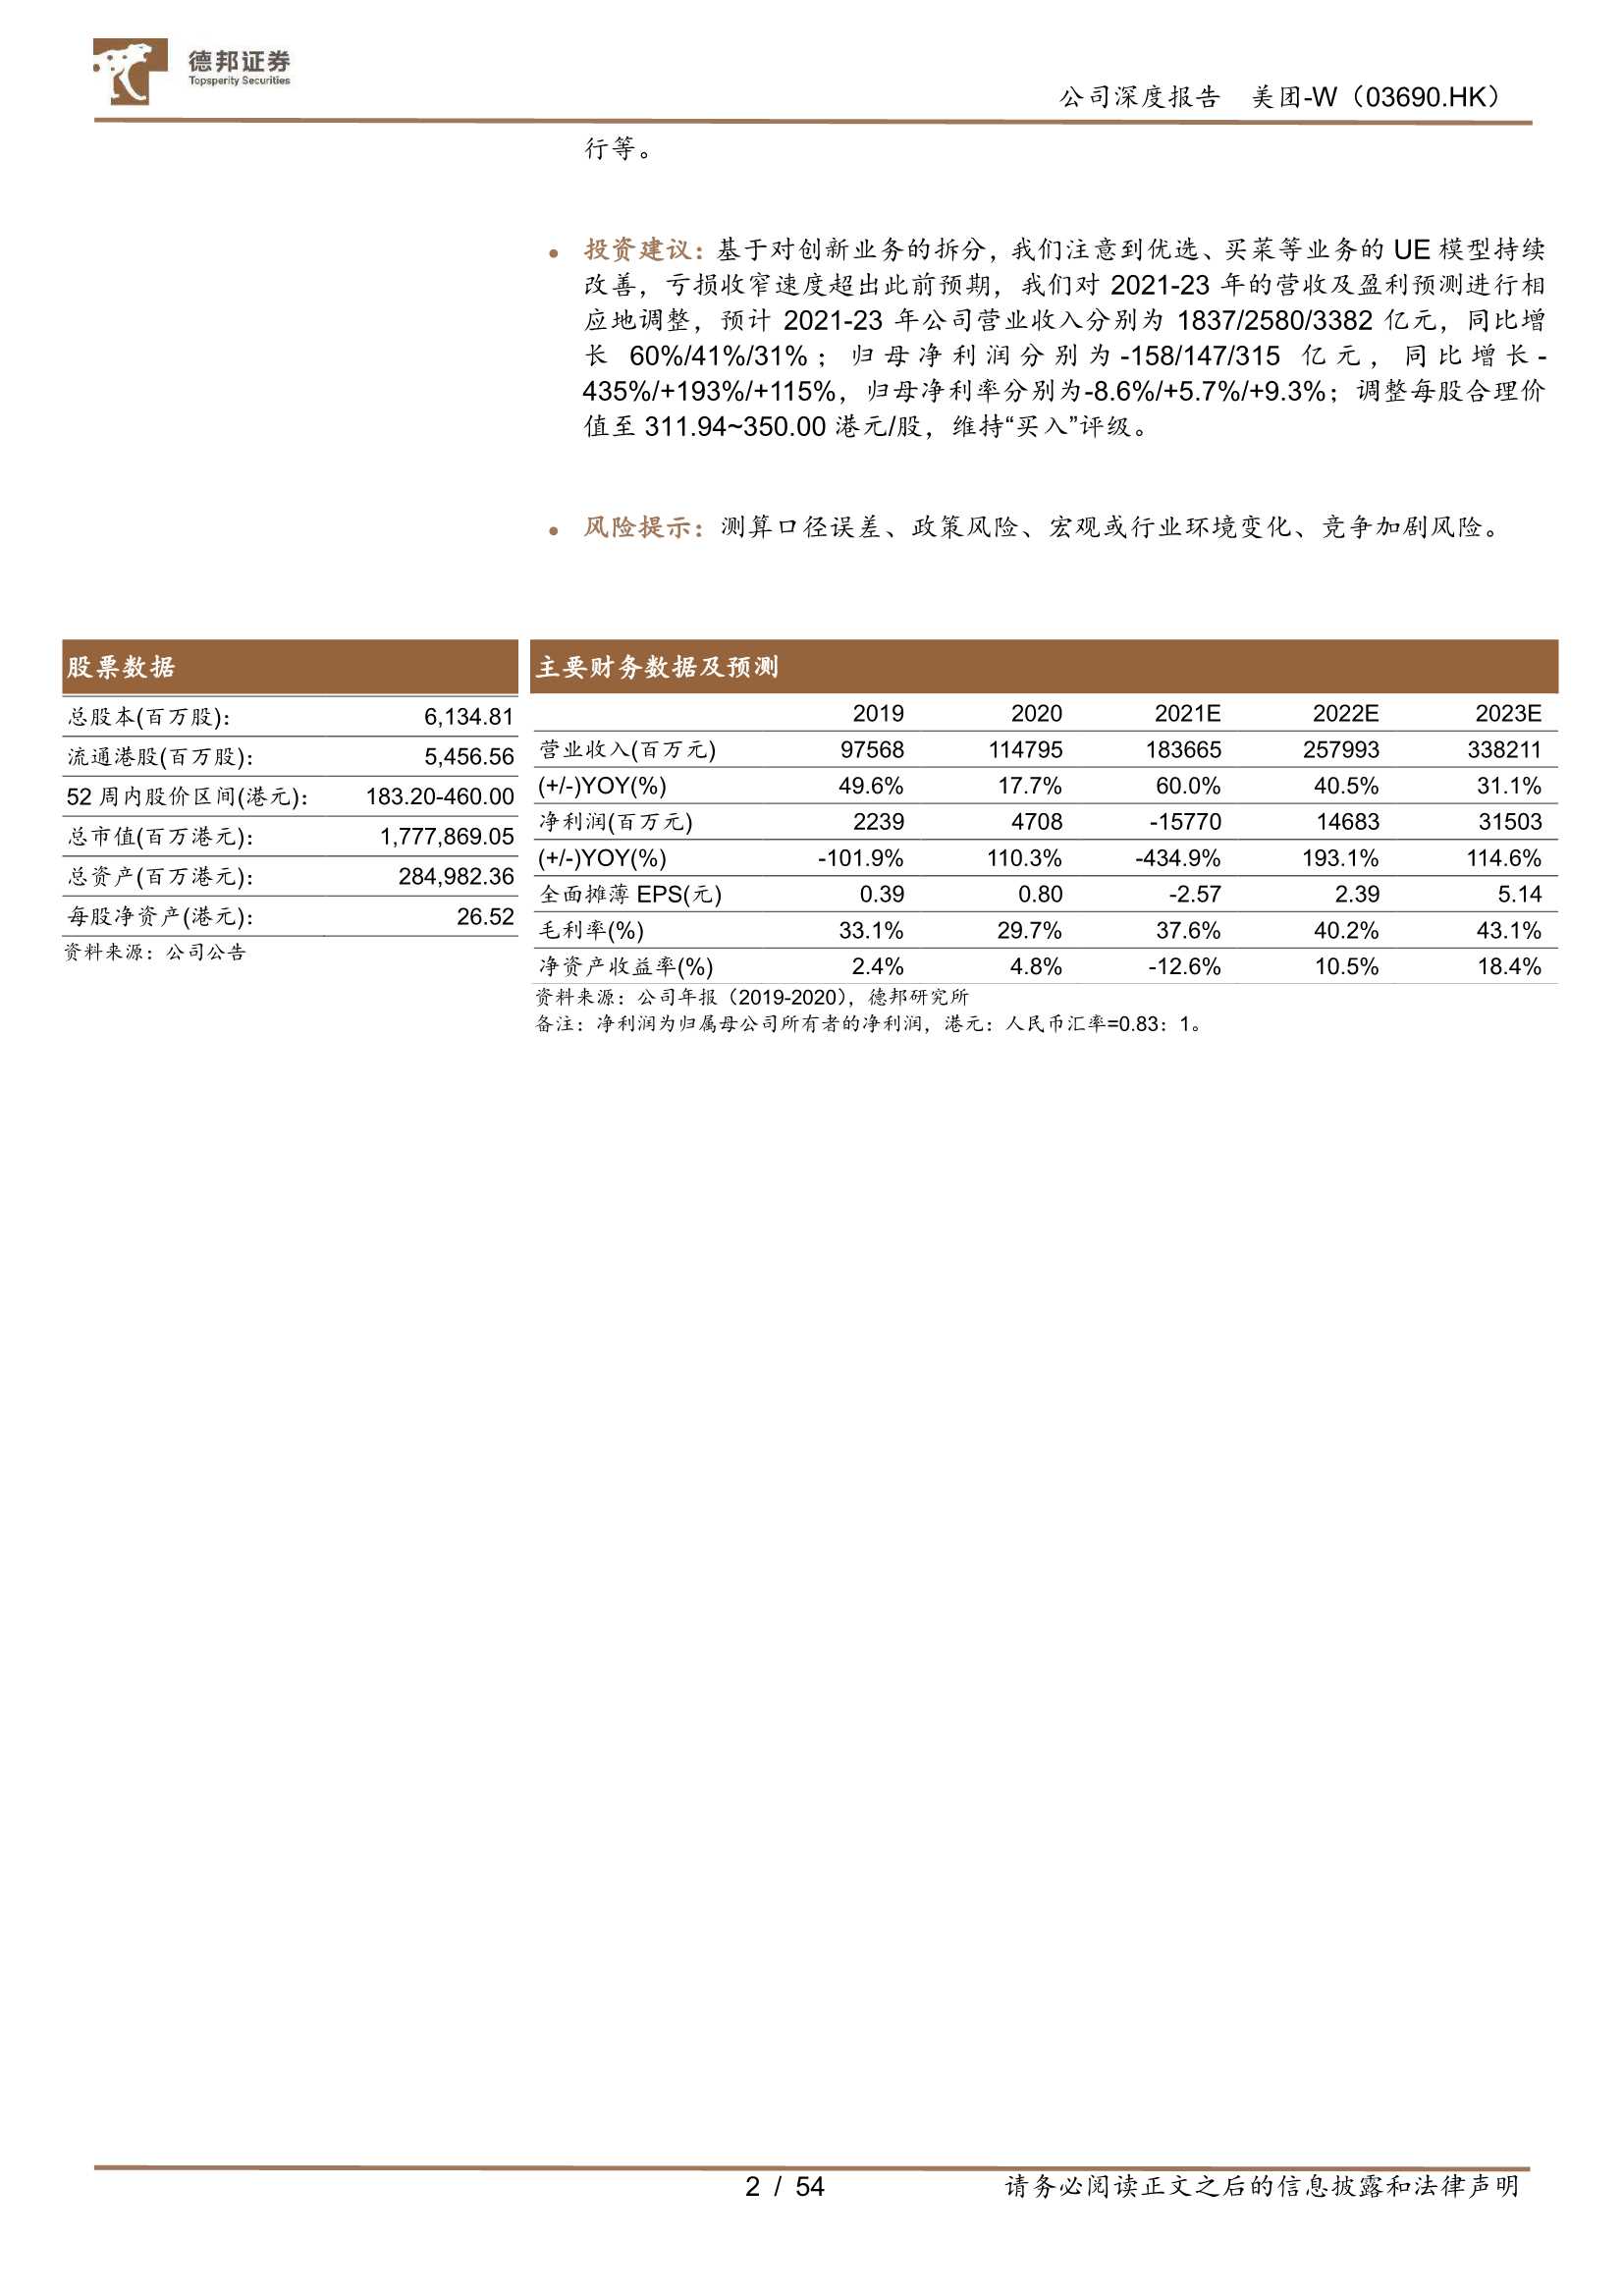 德邦证券-美团~W-3690.HK-创新业务持续优化，多线并举强化用户心智-20211115-54页